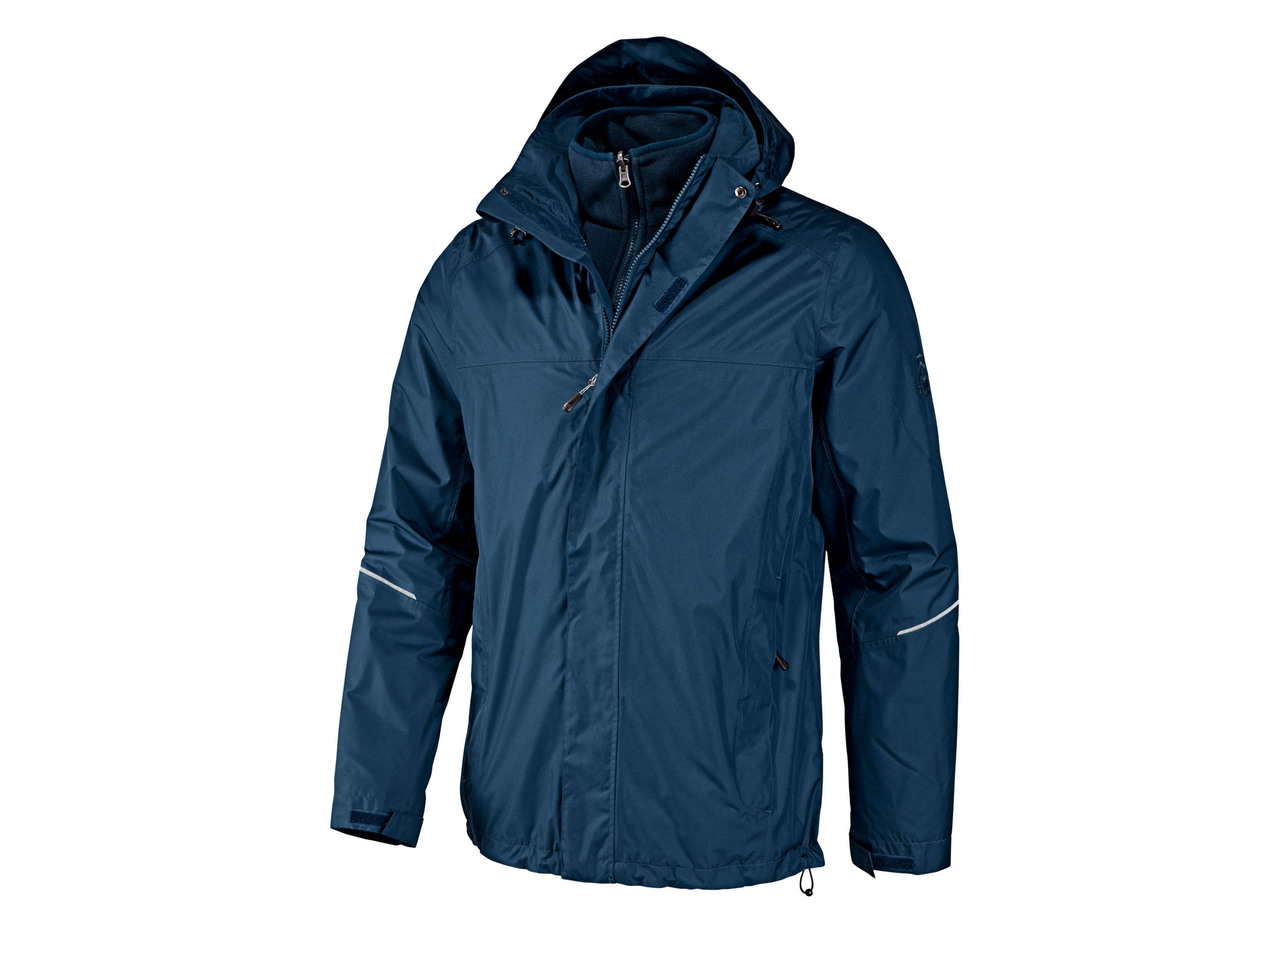 Men's or Ladies' Waterproof Jacket